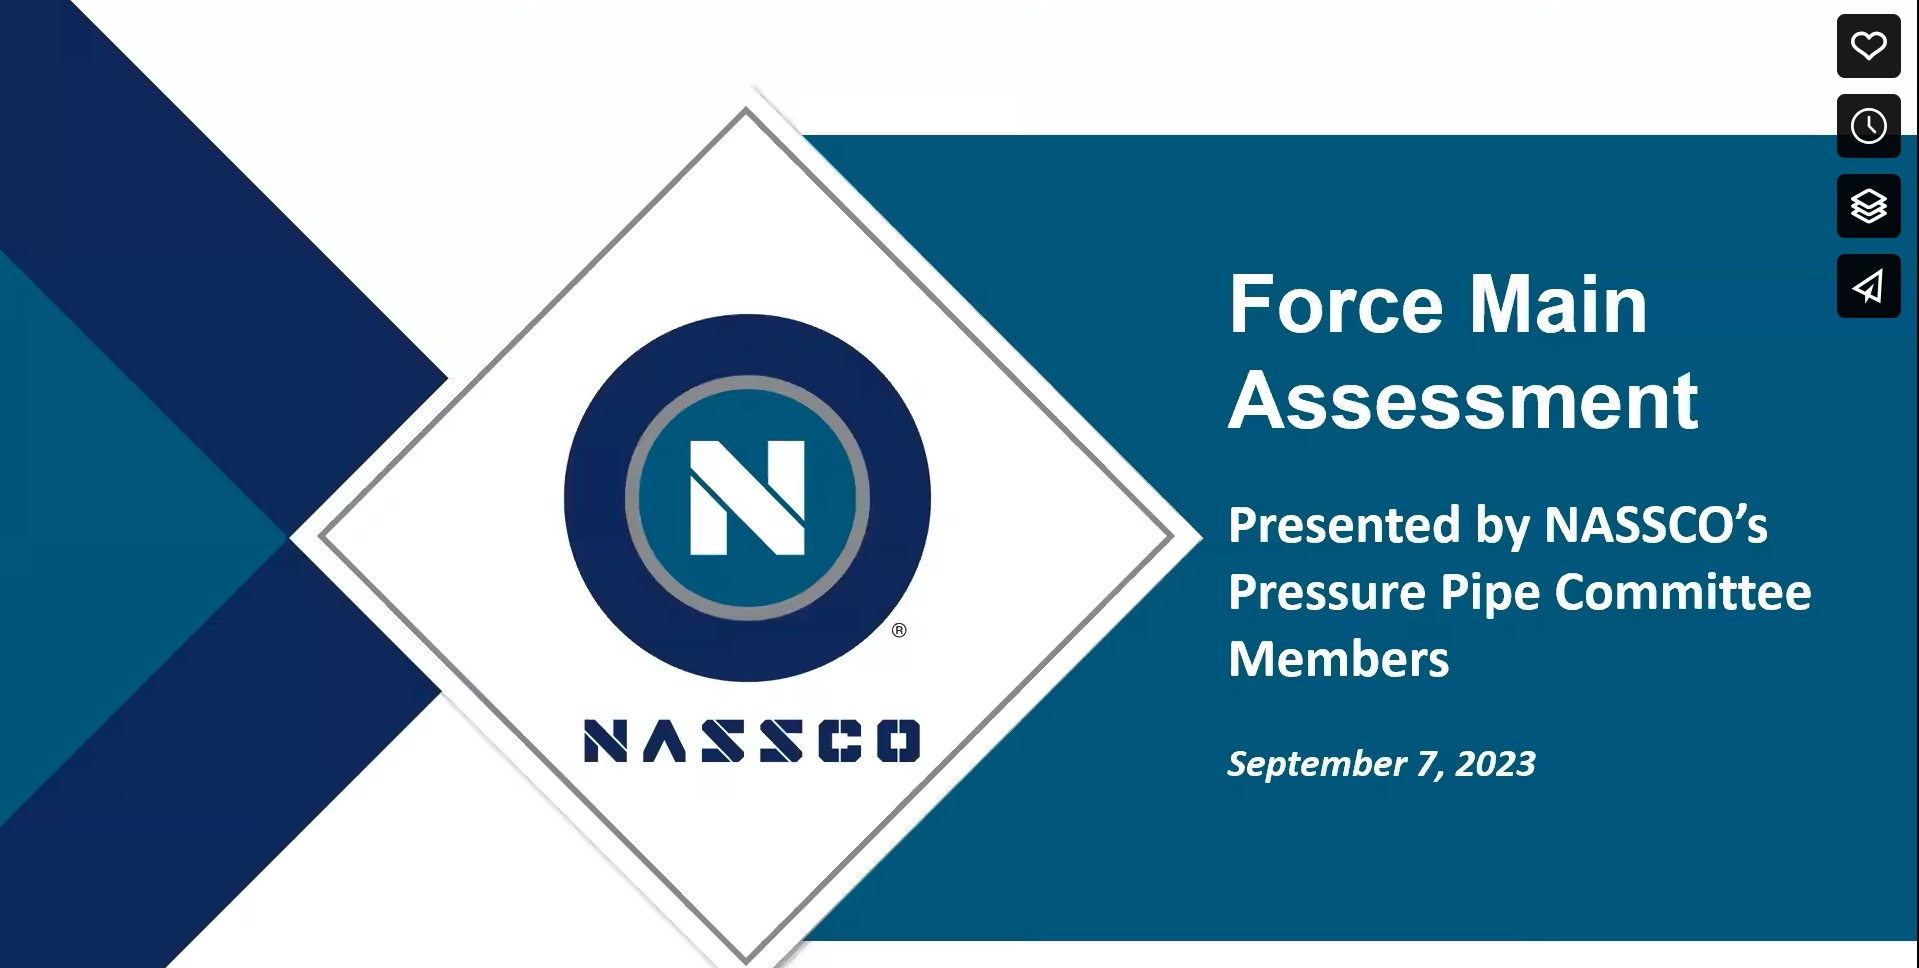 Force Main Assessment Webinar: NASSCO